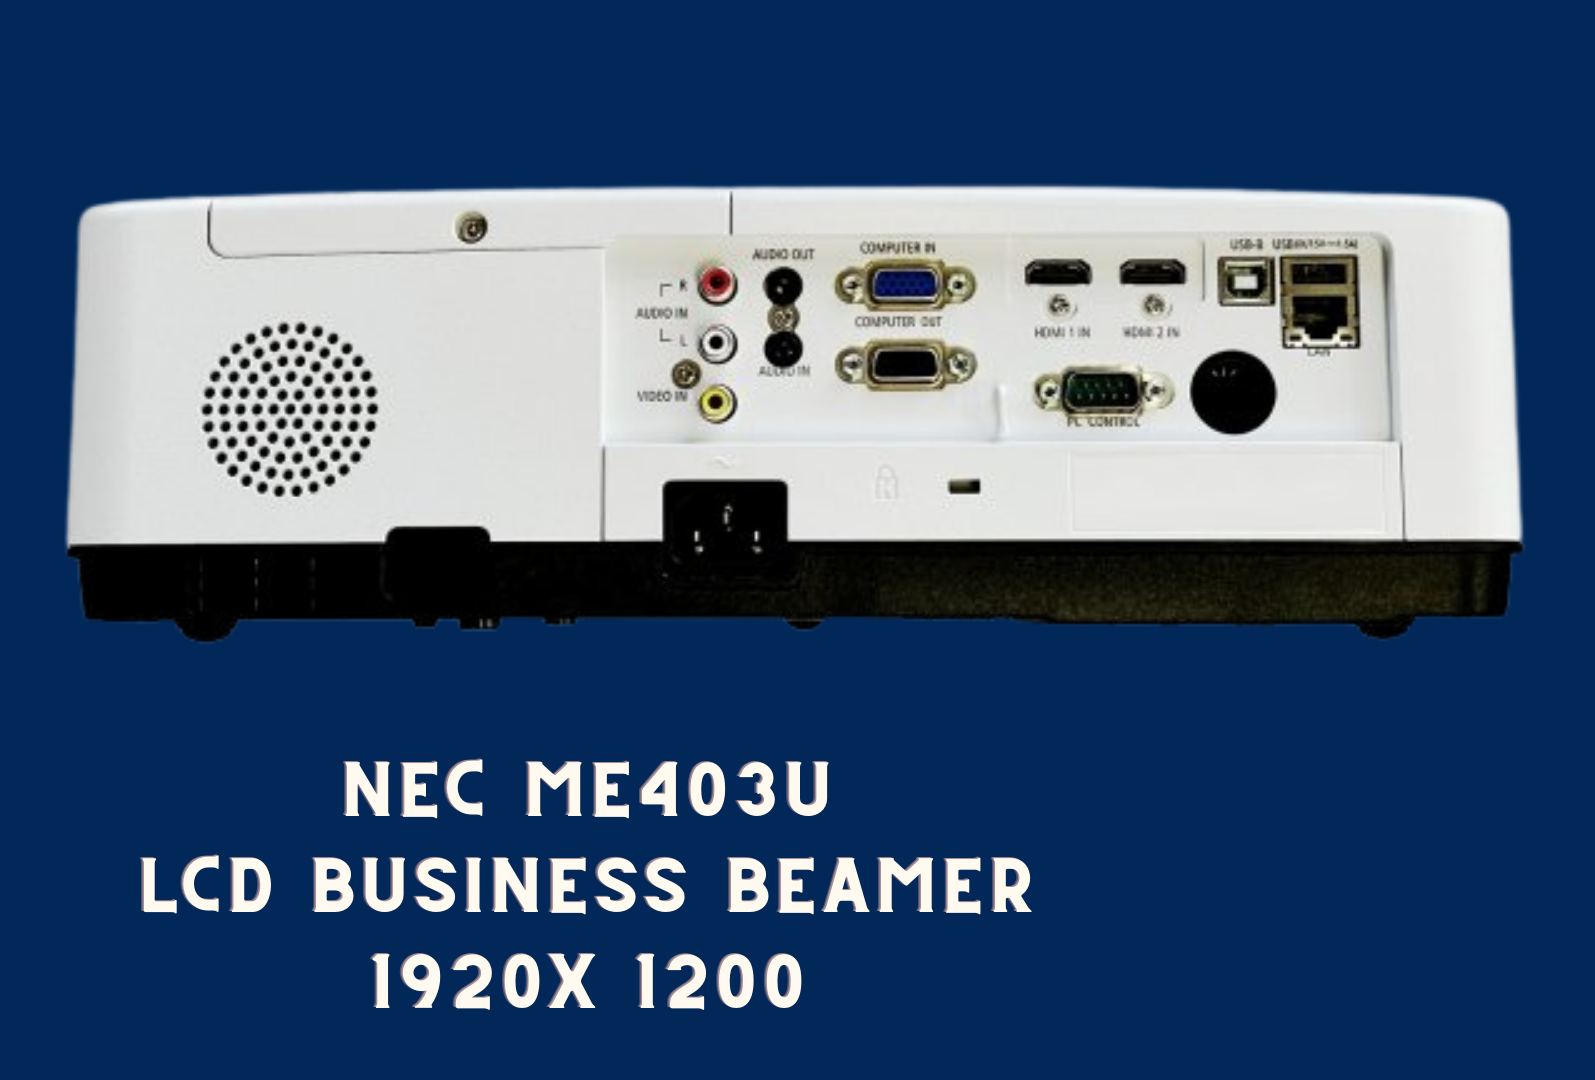 Beamer NEC ME403